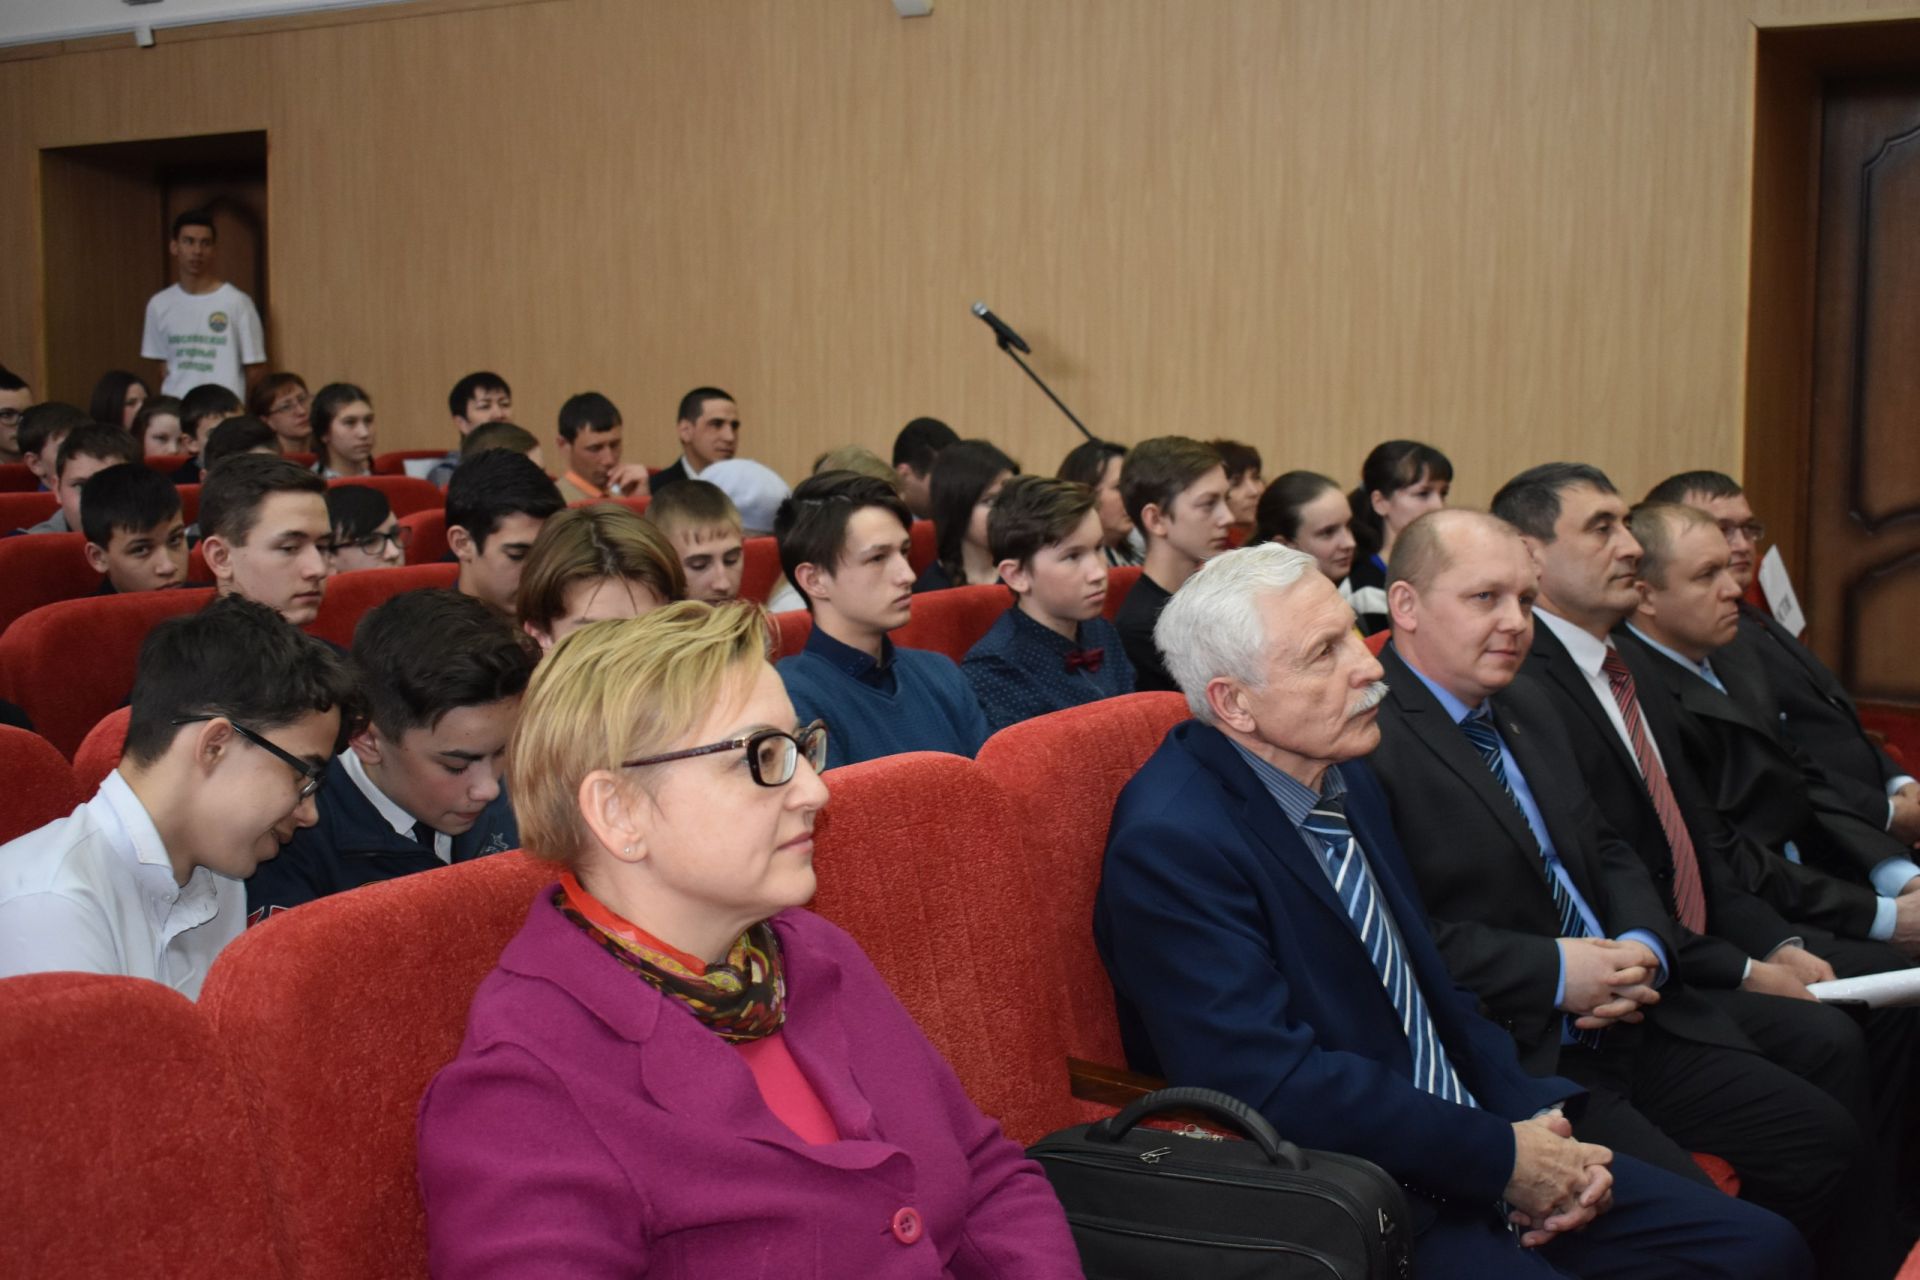 В Апастово прошла встреча студентов и старшеклассников